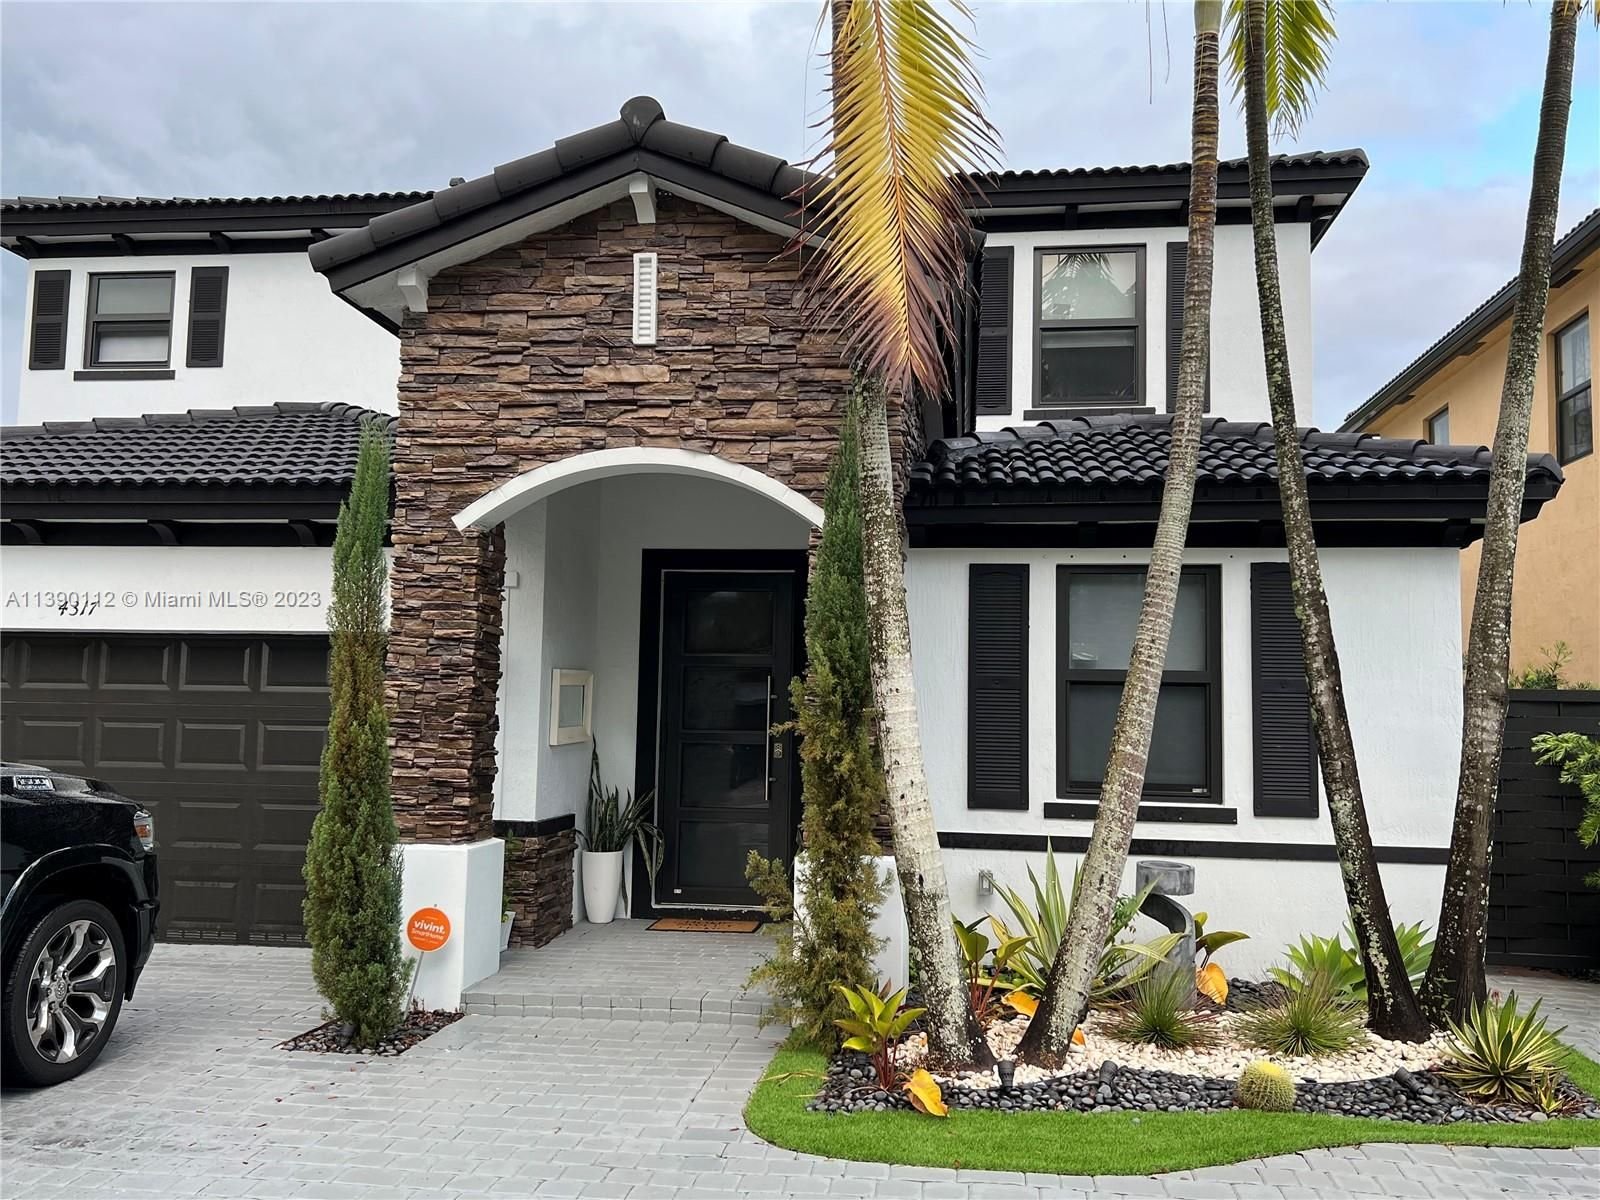 Real estate property located at 4317 164th Ct, Miami-Dade County, INTERLAKEN, Miami, FL